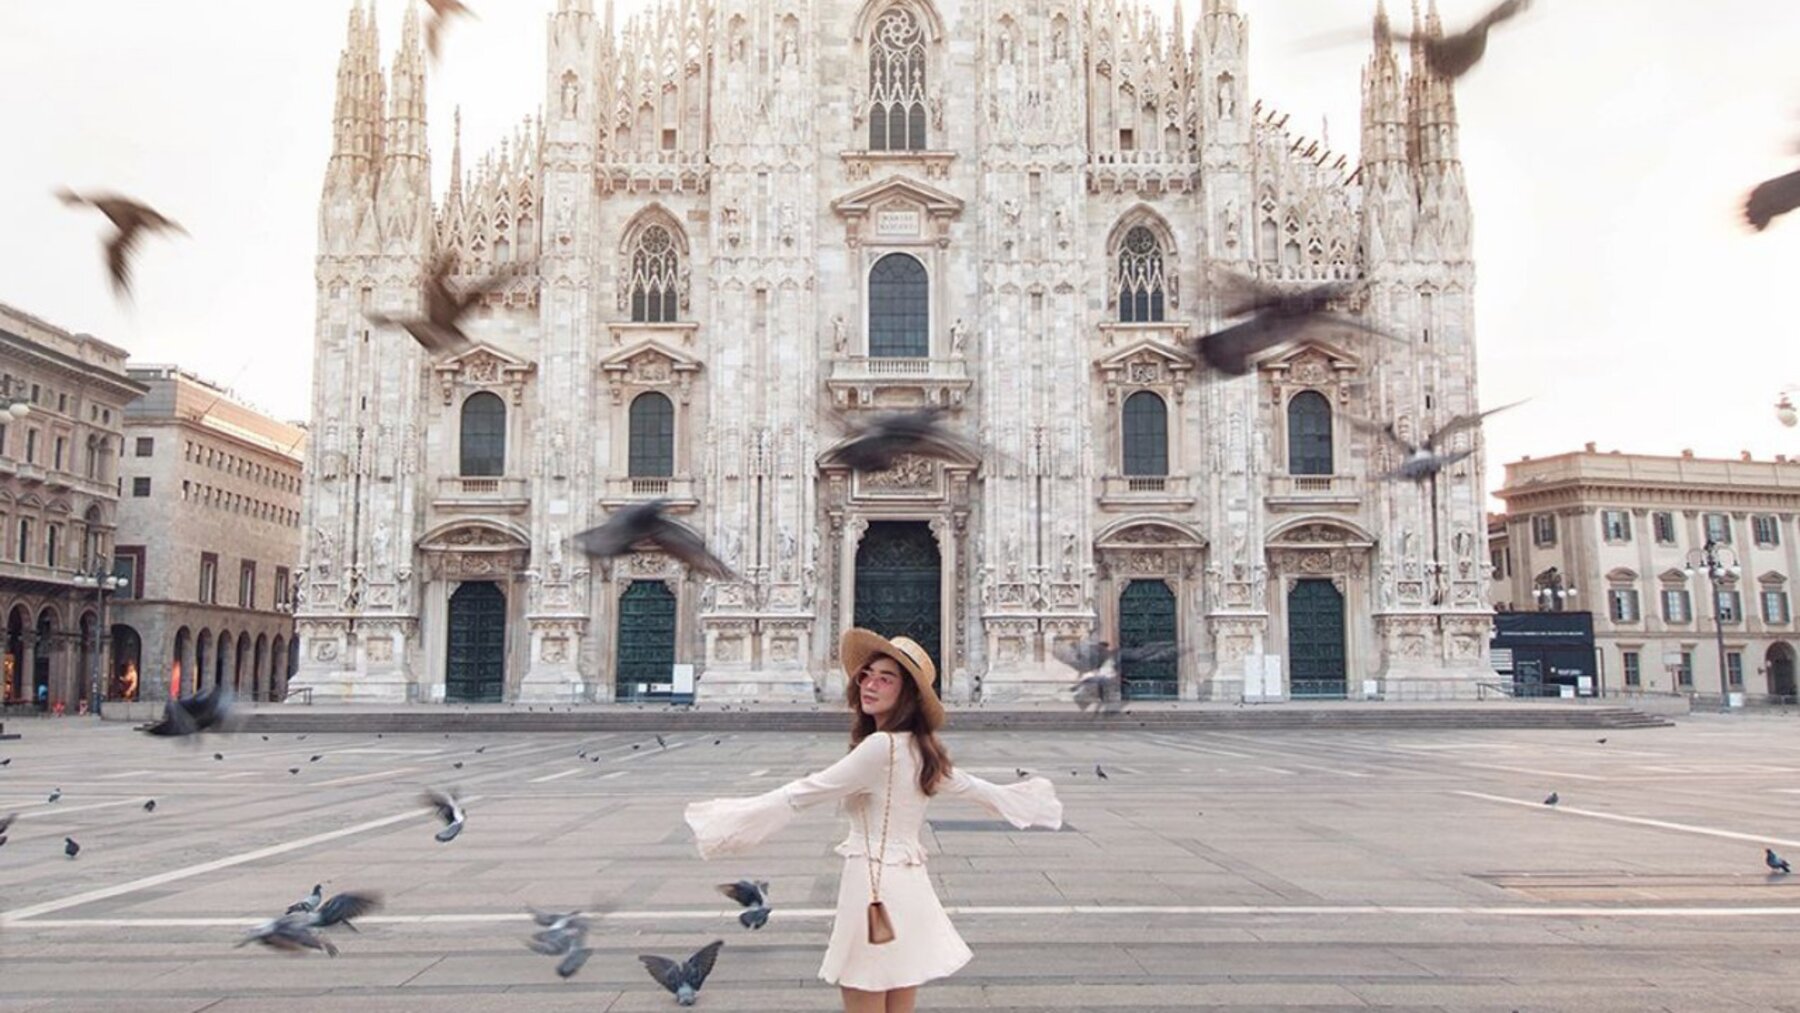 Lưu ý mặc trang phục phù hợp khi tham quan nhà thờ Duomo Milan